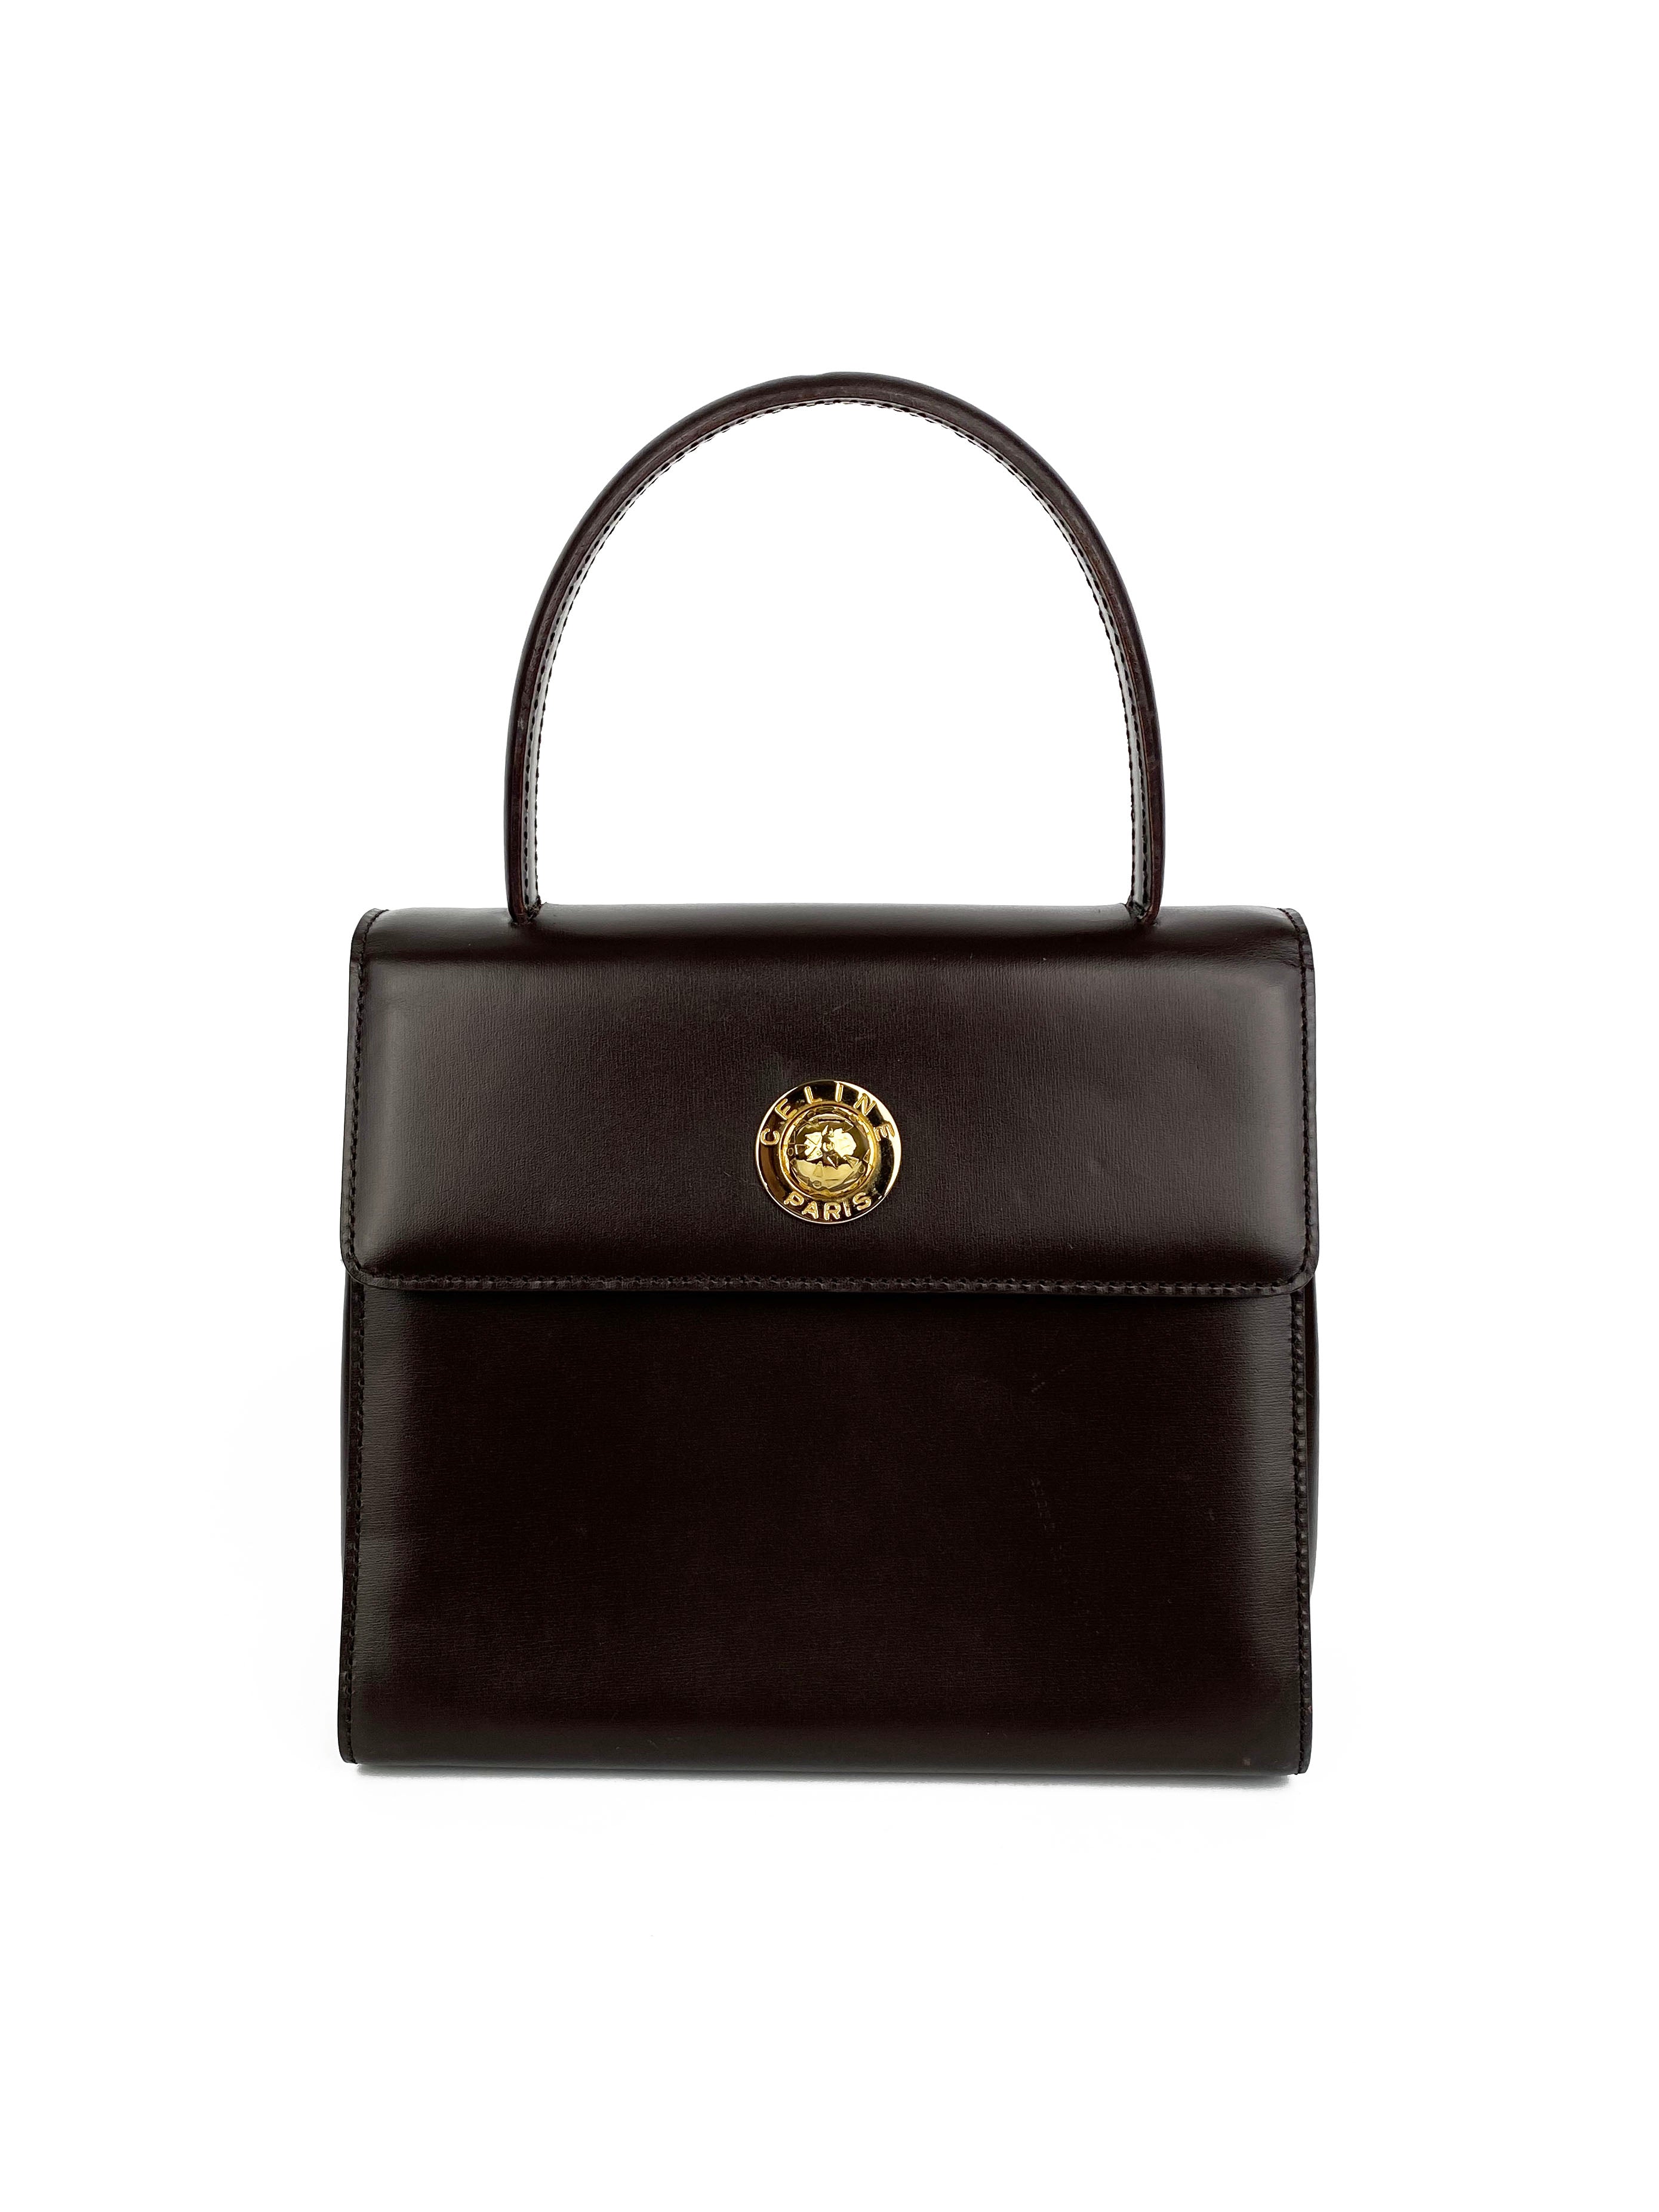 Celine Vintage Brown Top Handle Bag